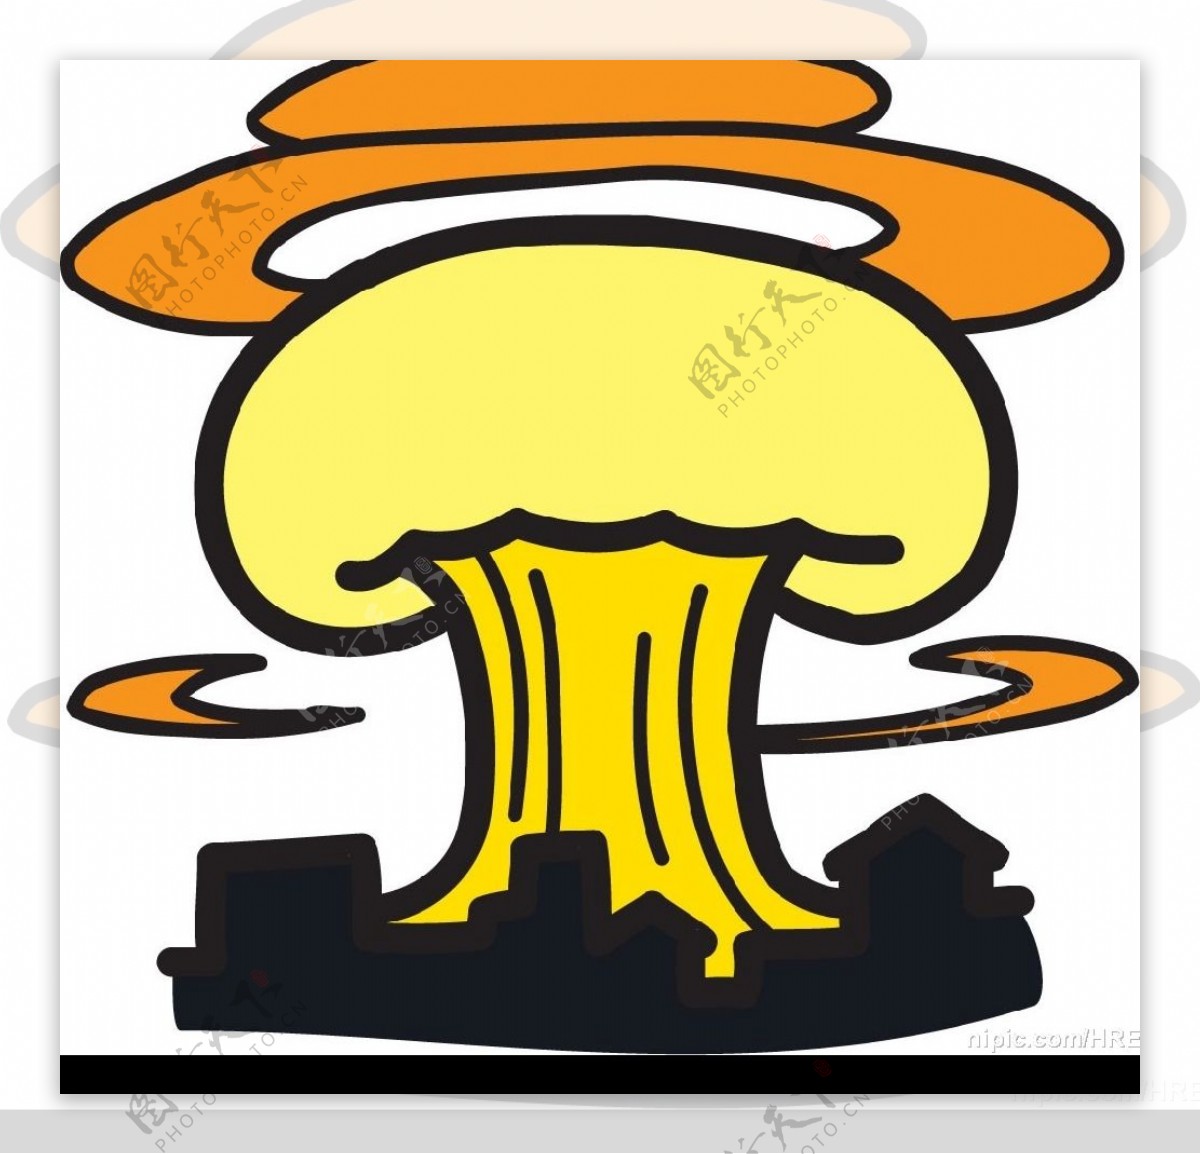 原子弹爆炸漫画图片